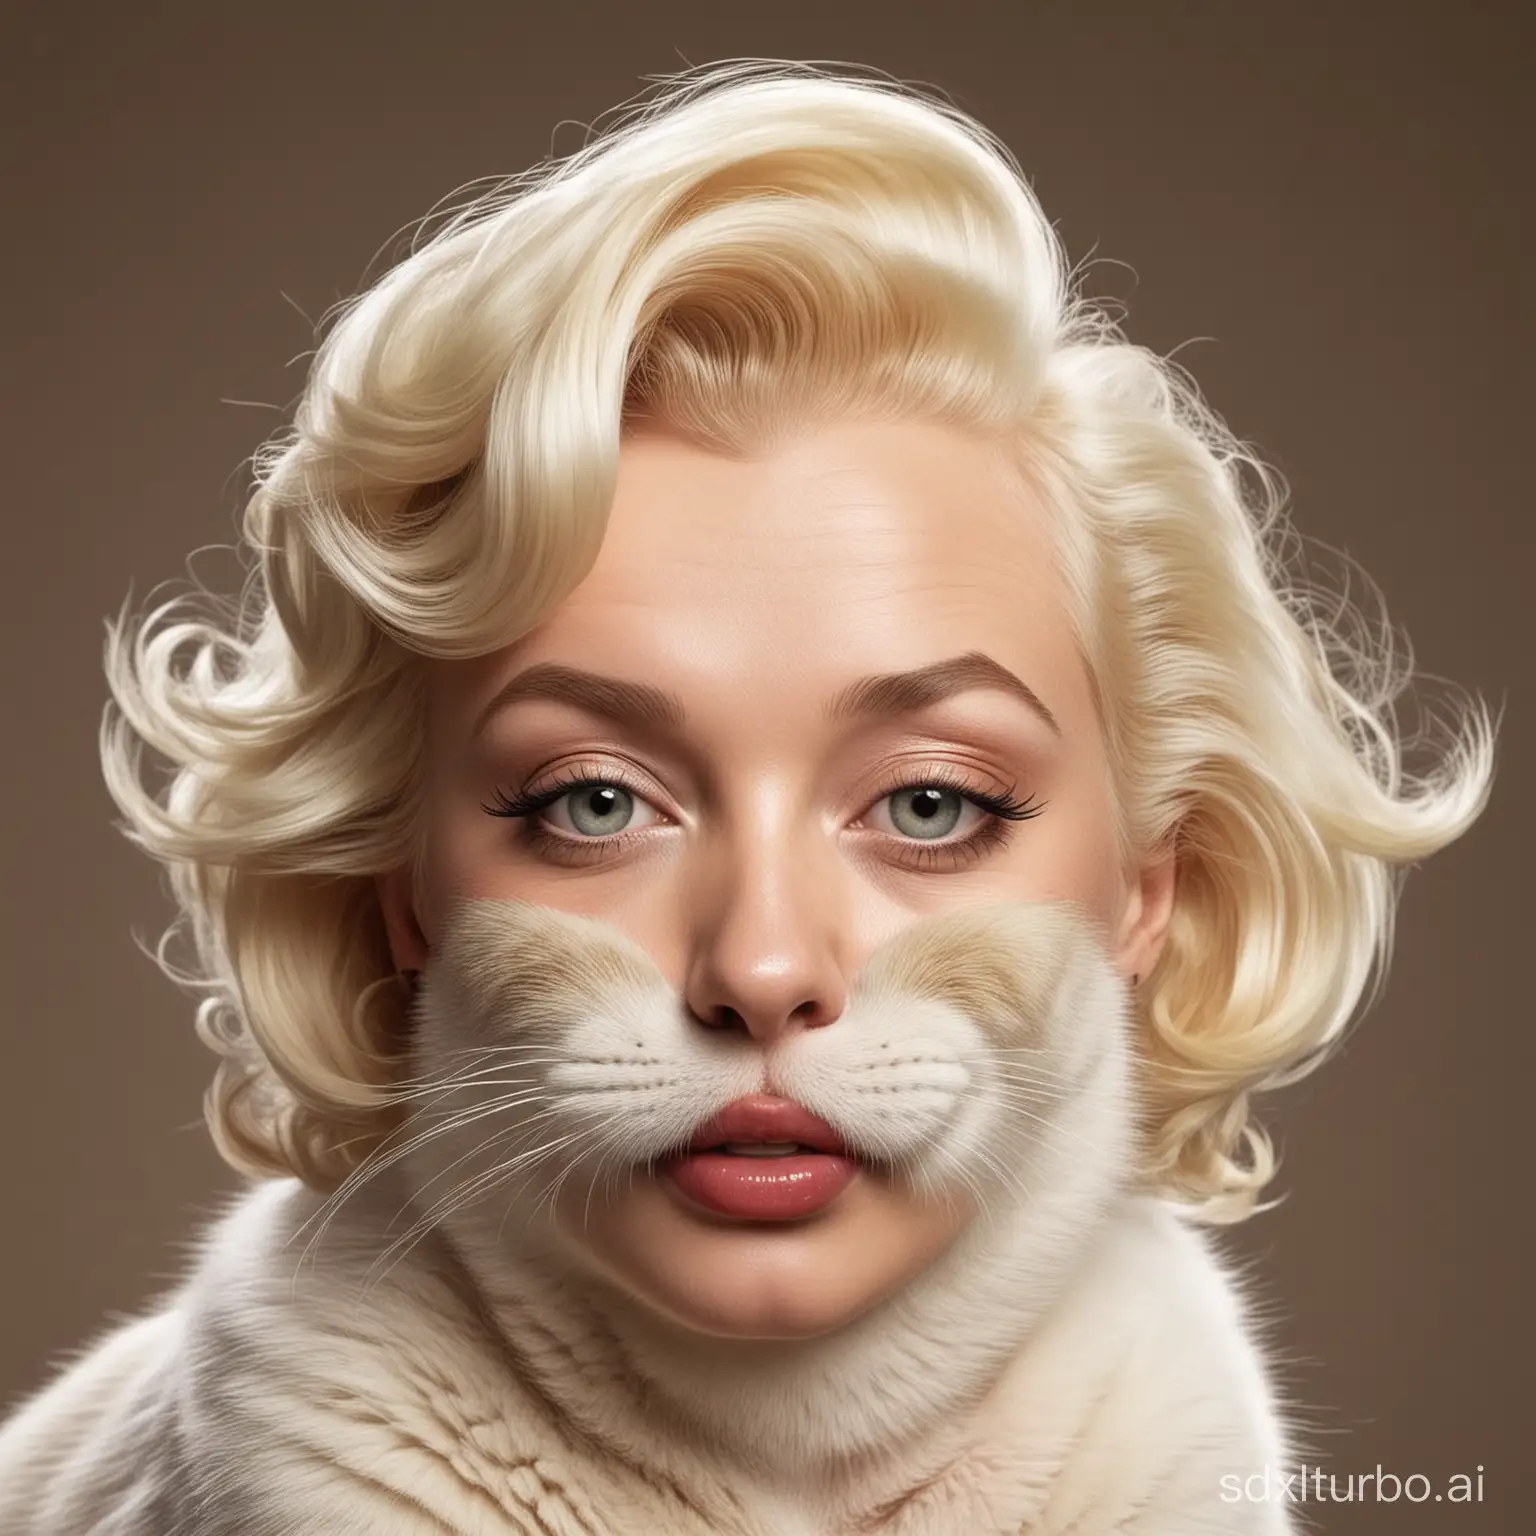 Marilyn-Monroe-Transformed-into-a-Feline-Beauty